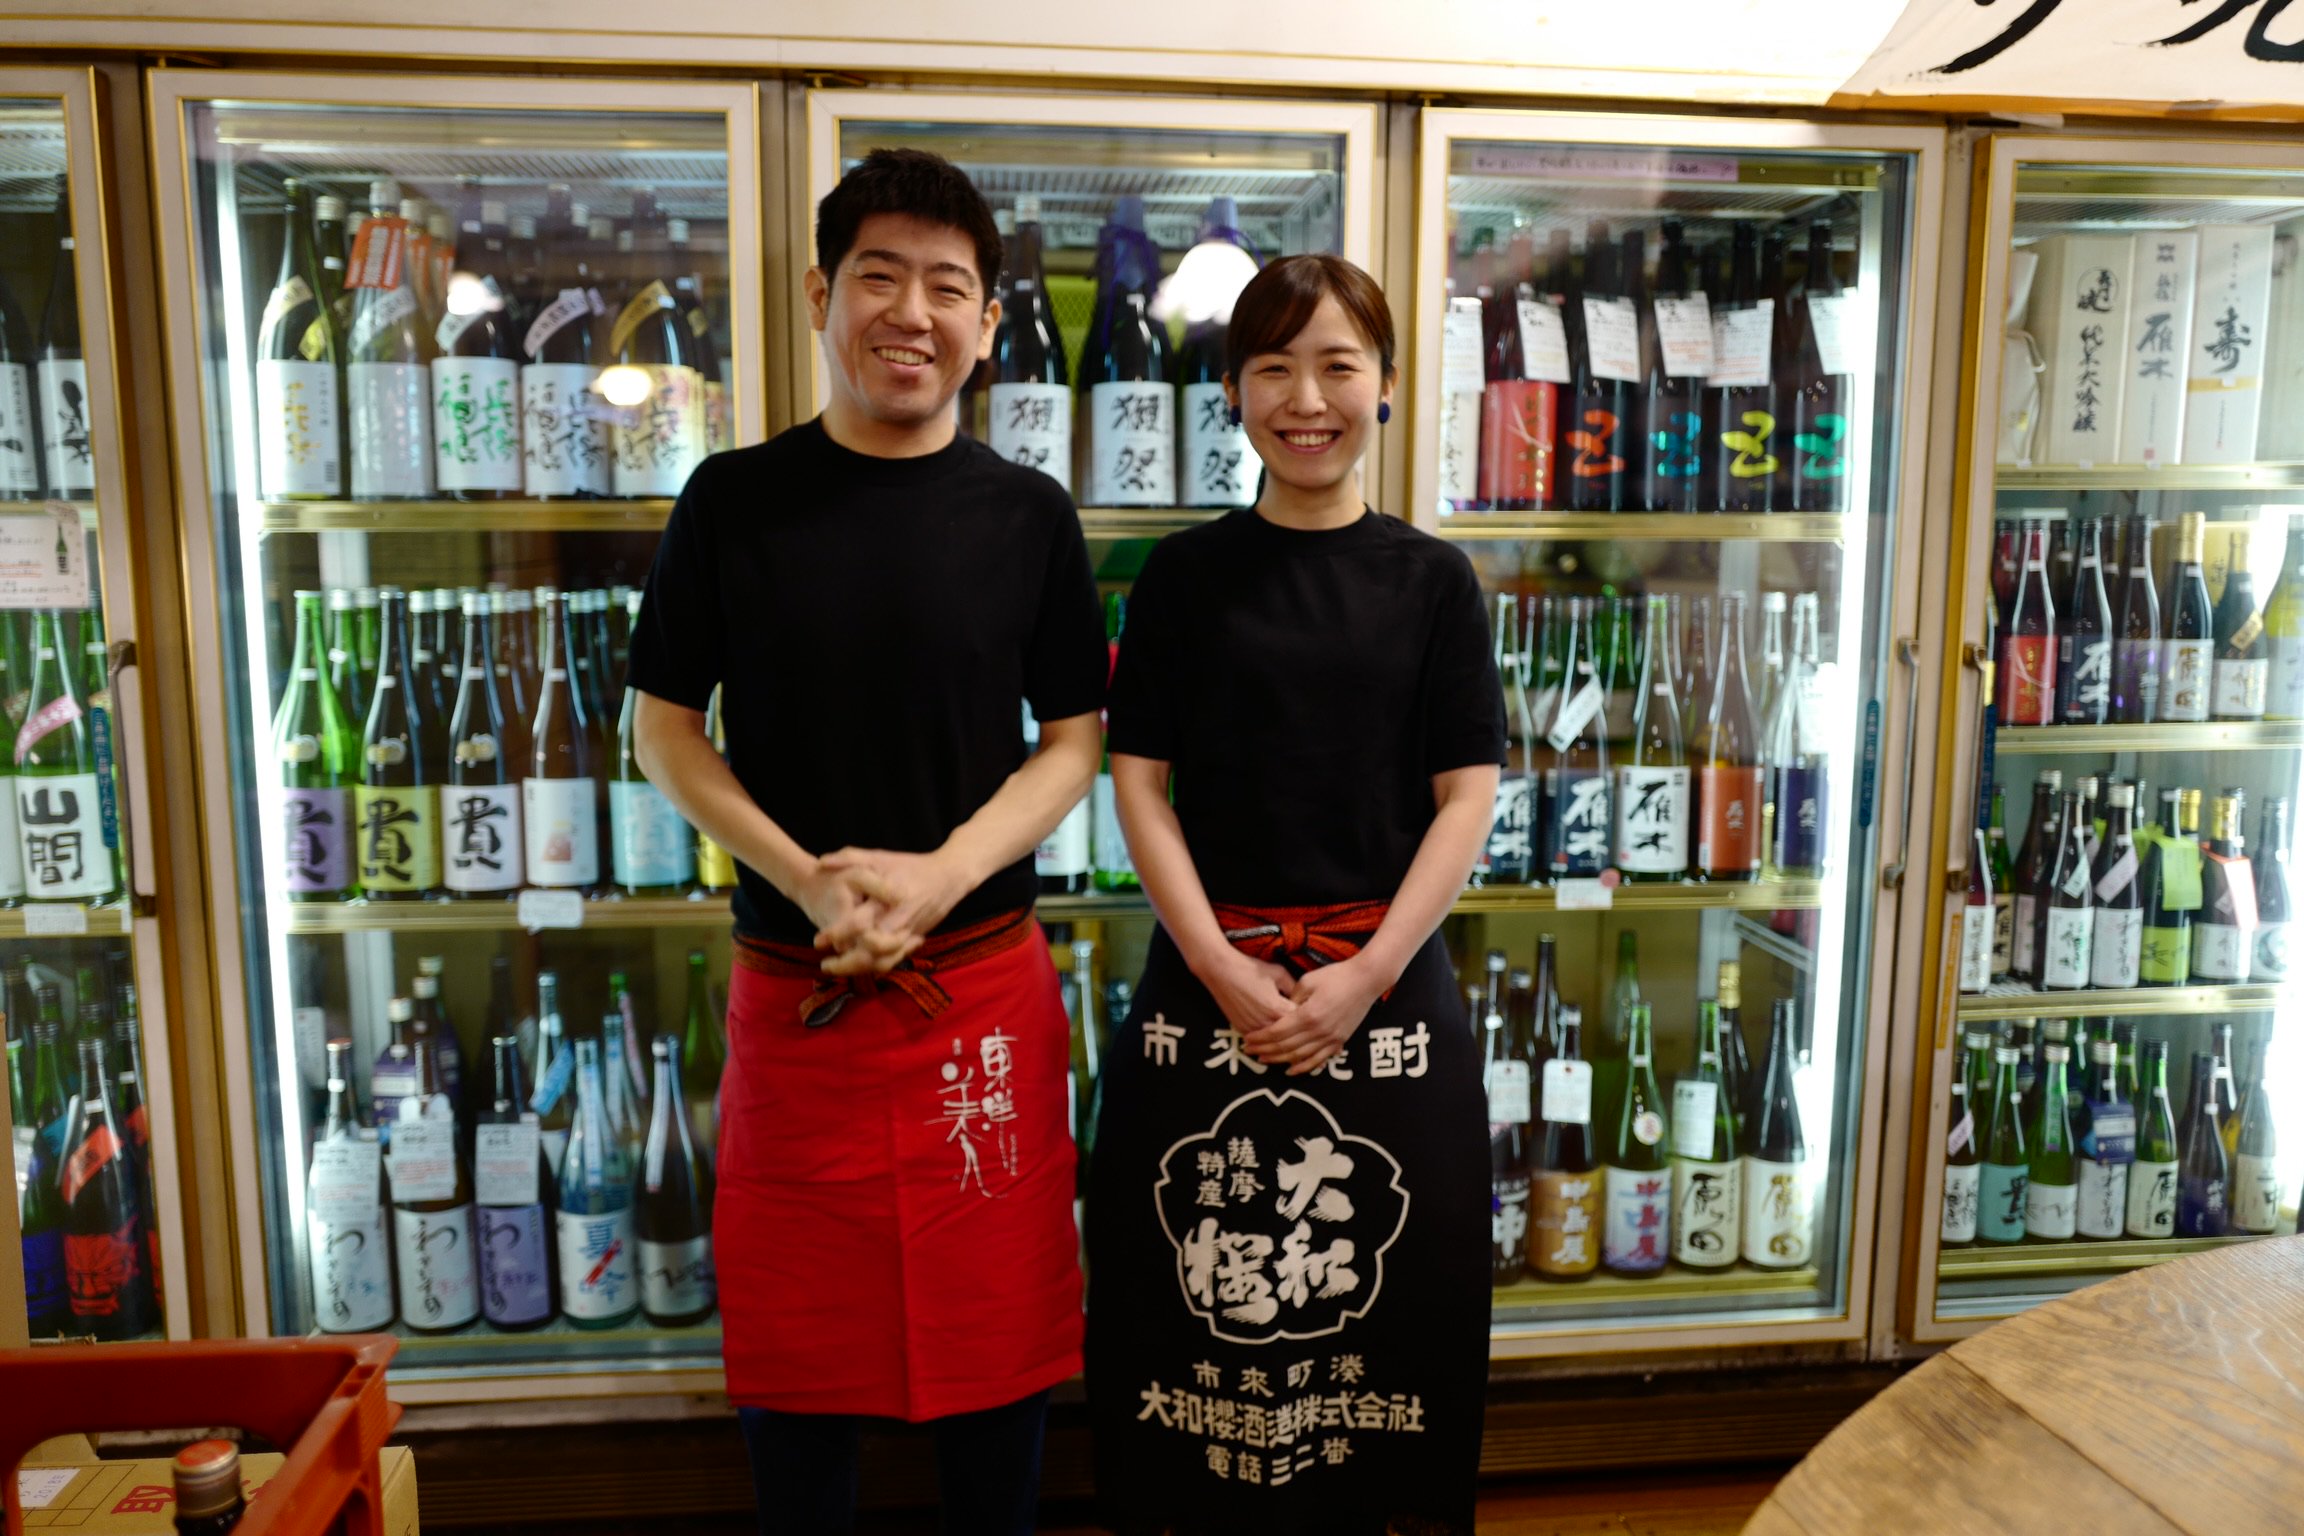 地酒のまえつる 日本酒・焼酎の通販ページ | 山口県をはじめ、全国の地酒を購入いただける通販サイトです。店舗は山口県下関市にございます。